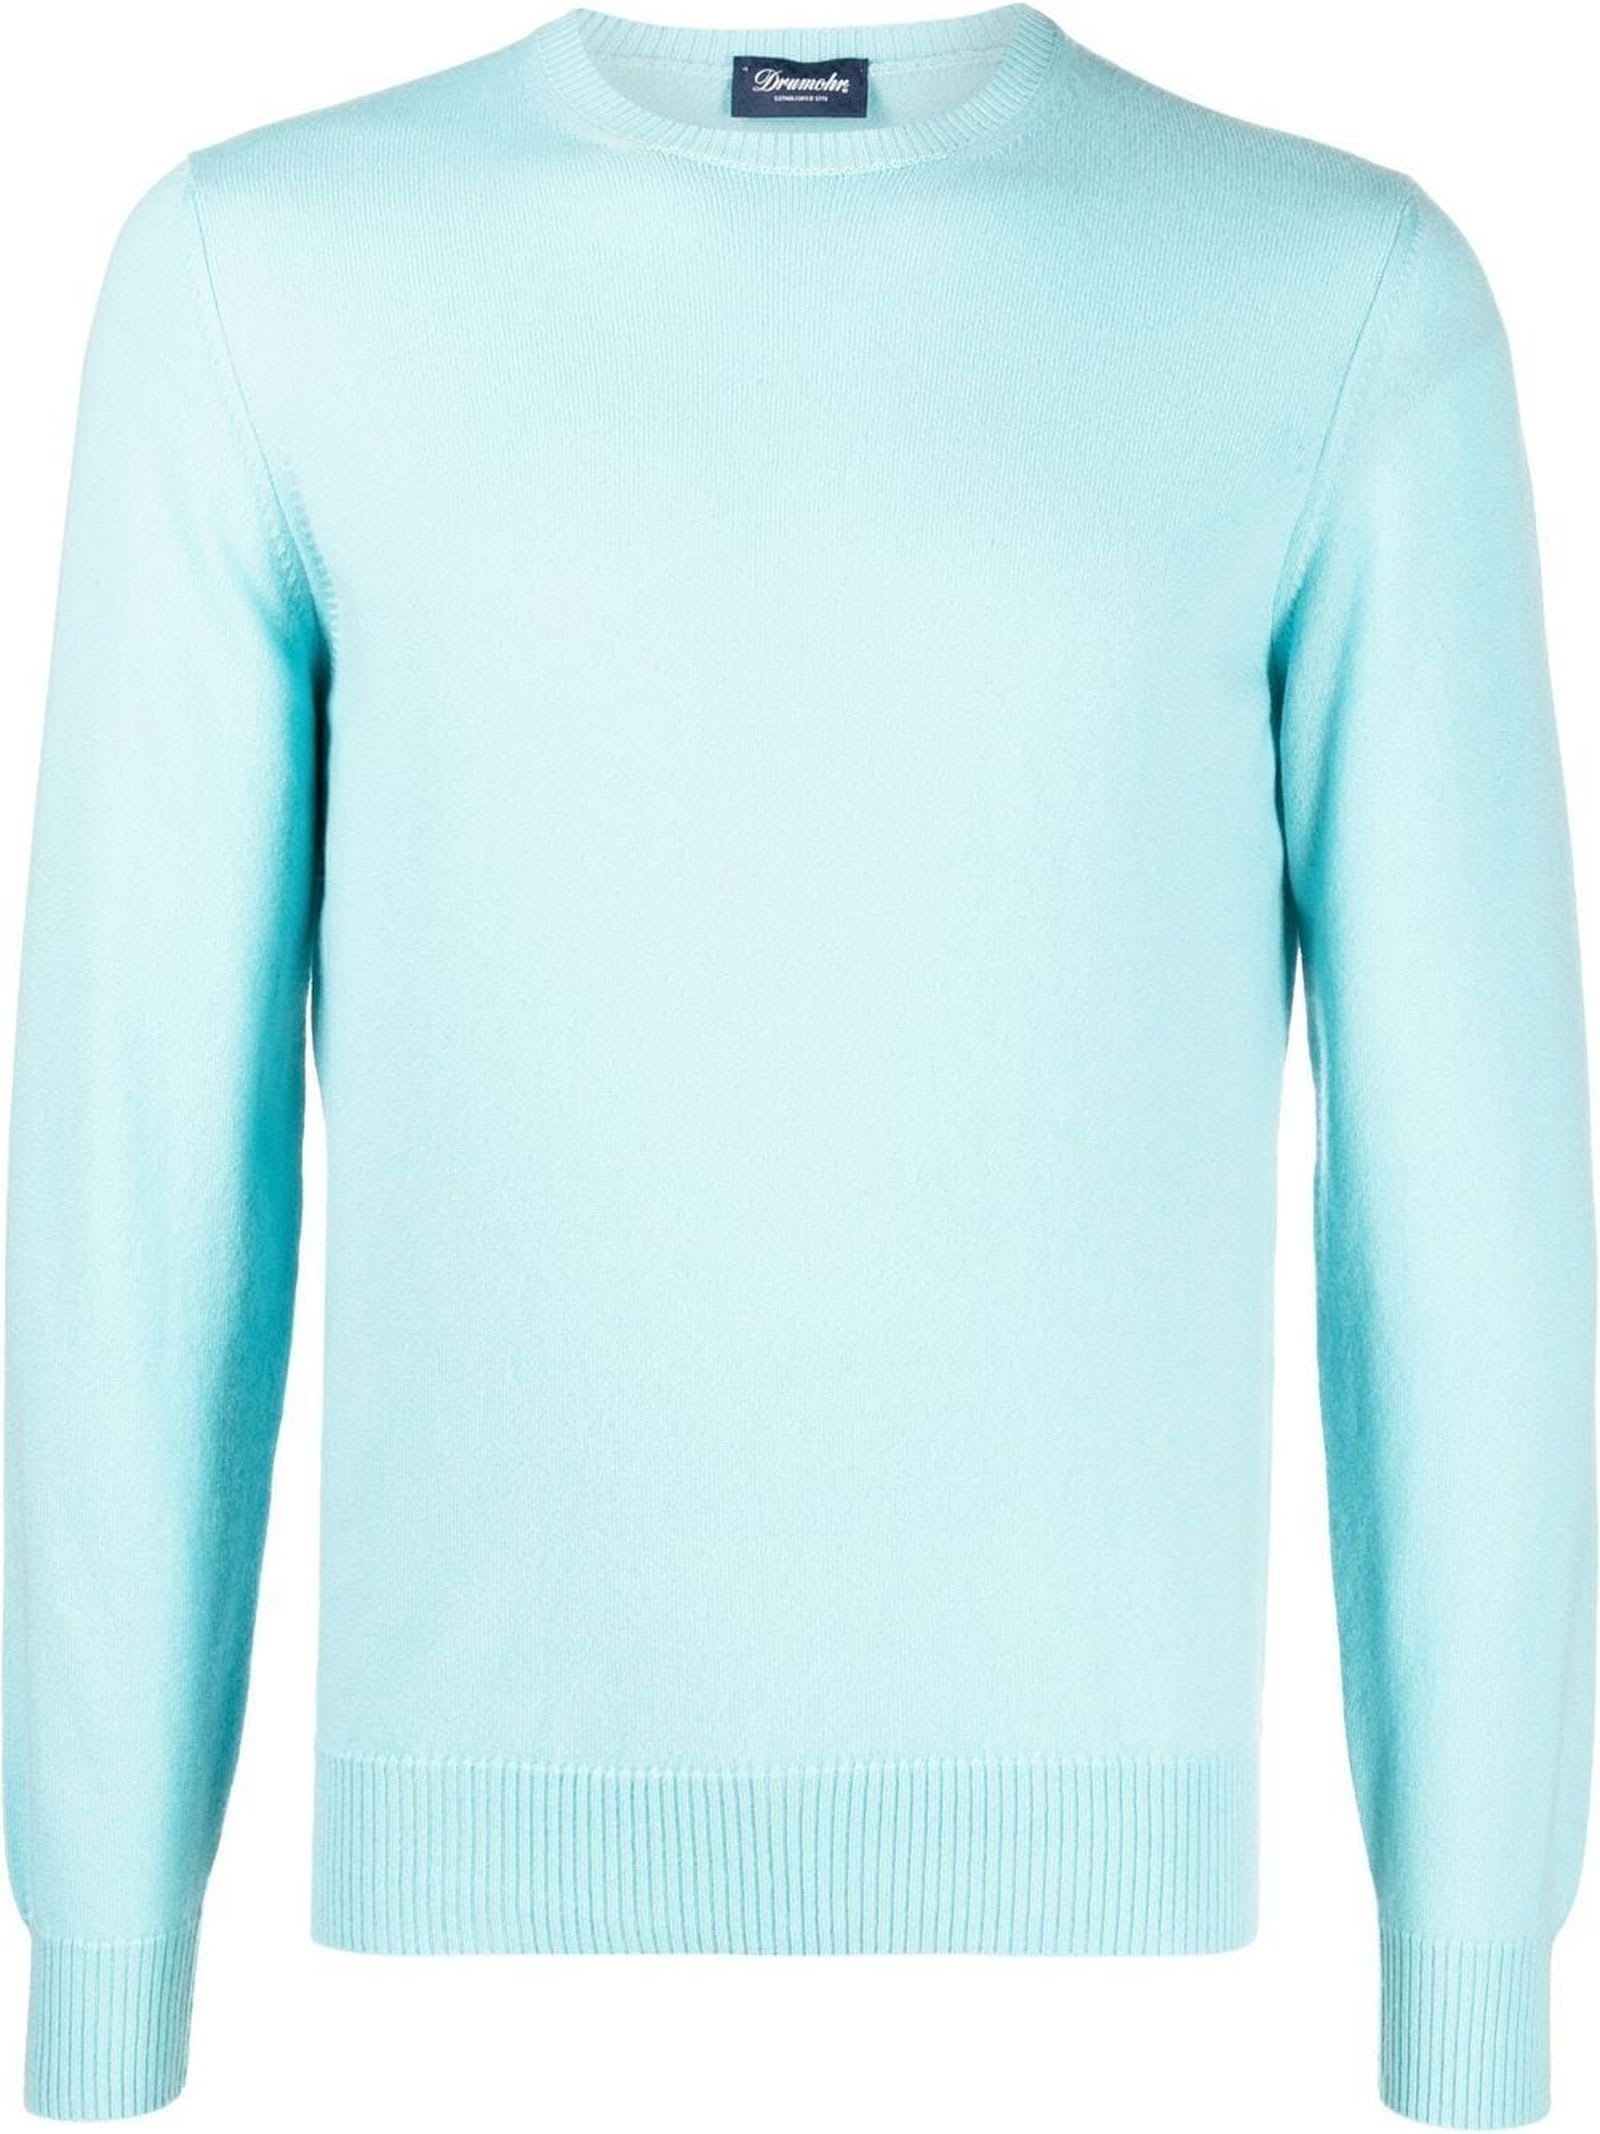 Drumohr sky-blue cashmere jumper